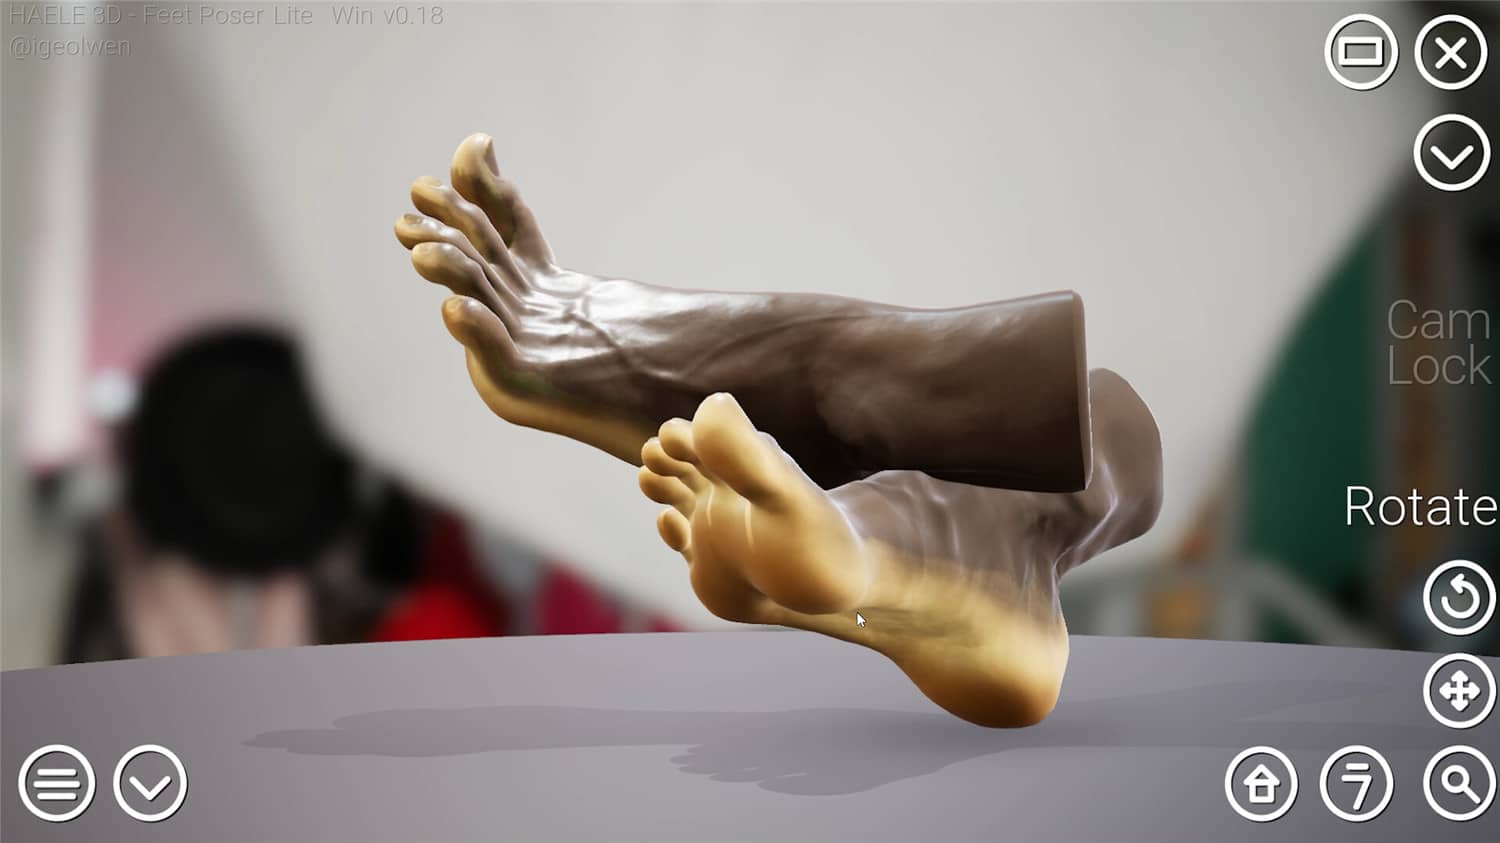 足部造型模拟器/HAELE 3D - Feet Poser Lite-5